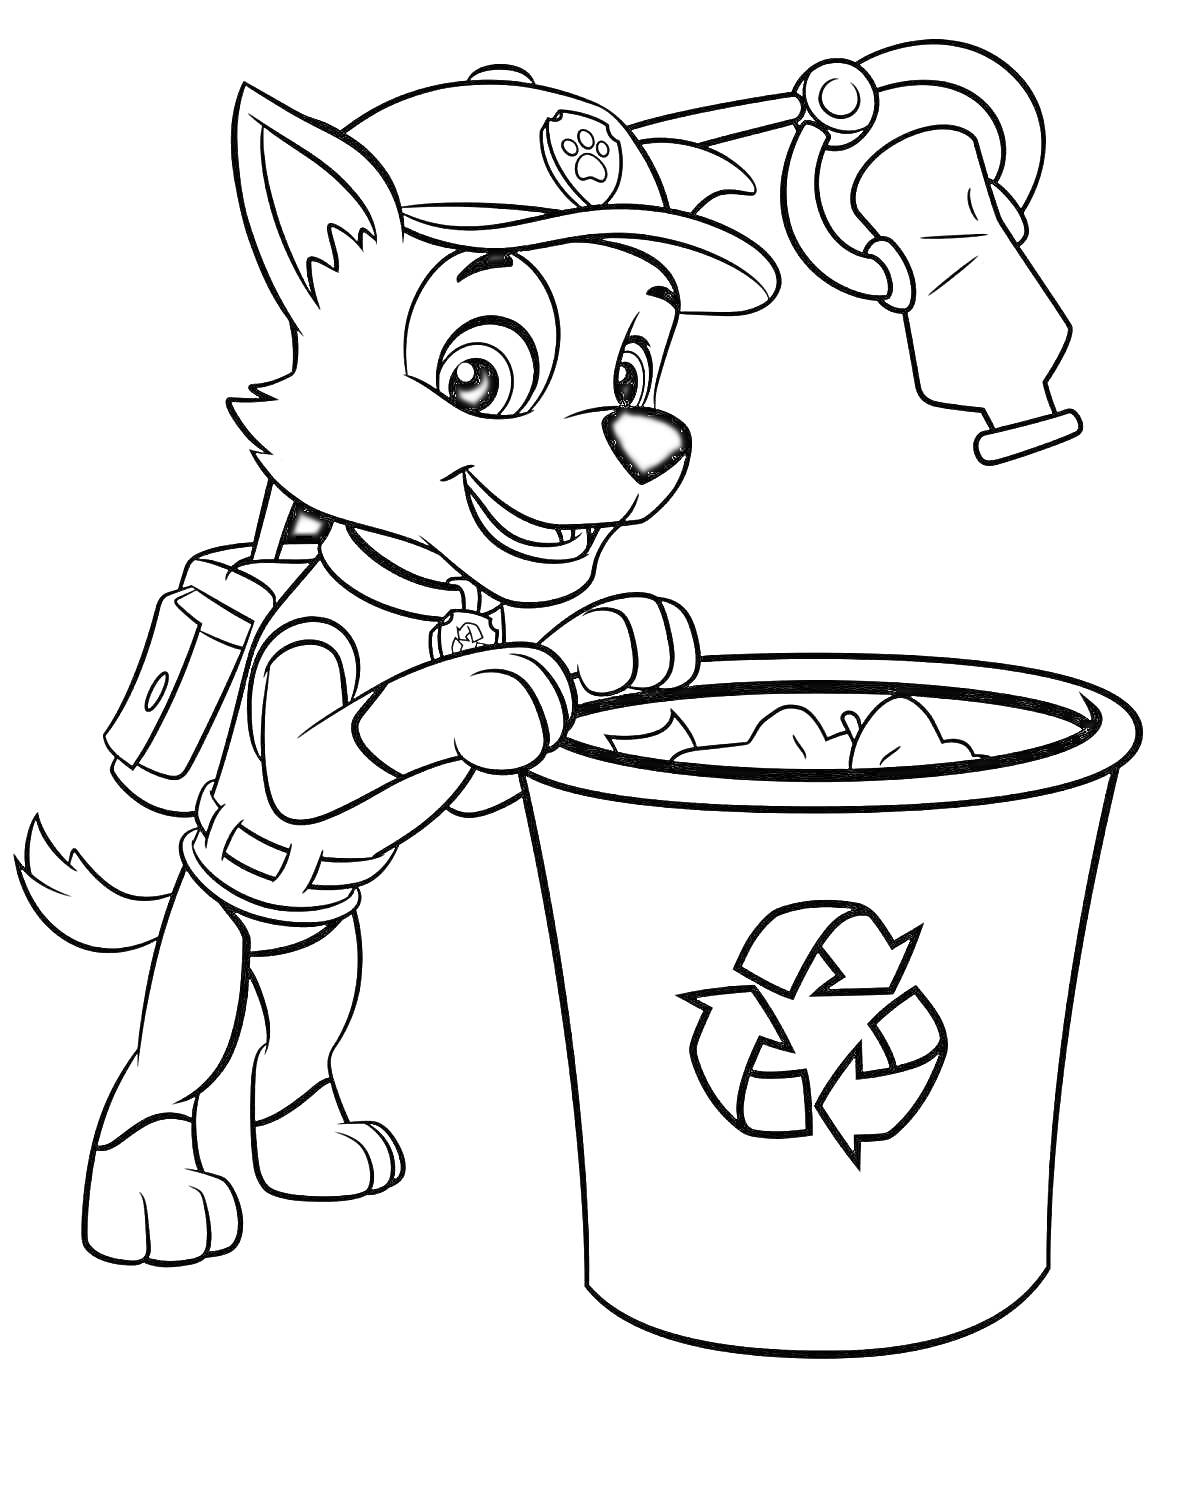 Раскраска Щенок из Щенячьего патруля сортирует мусор в контейнер с символом переработки и держит бутылку